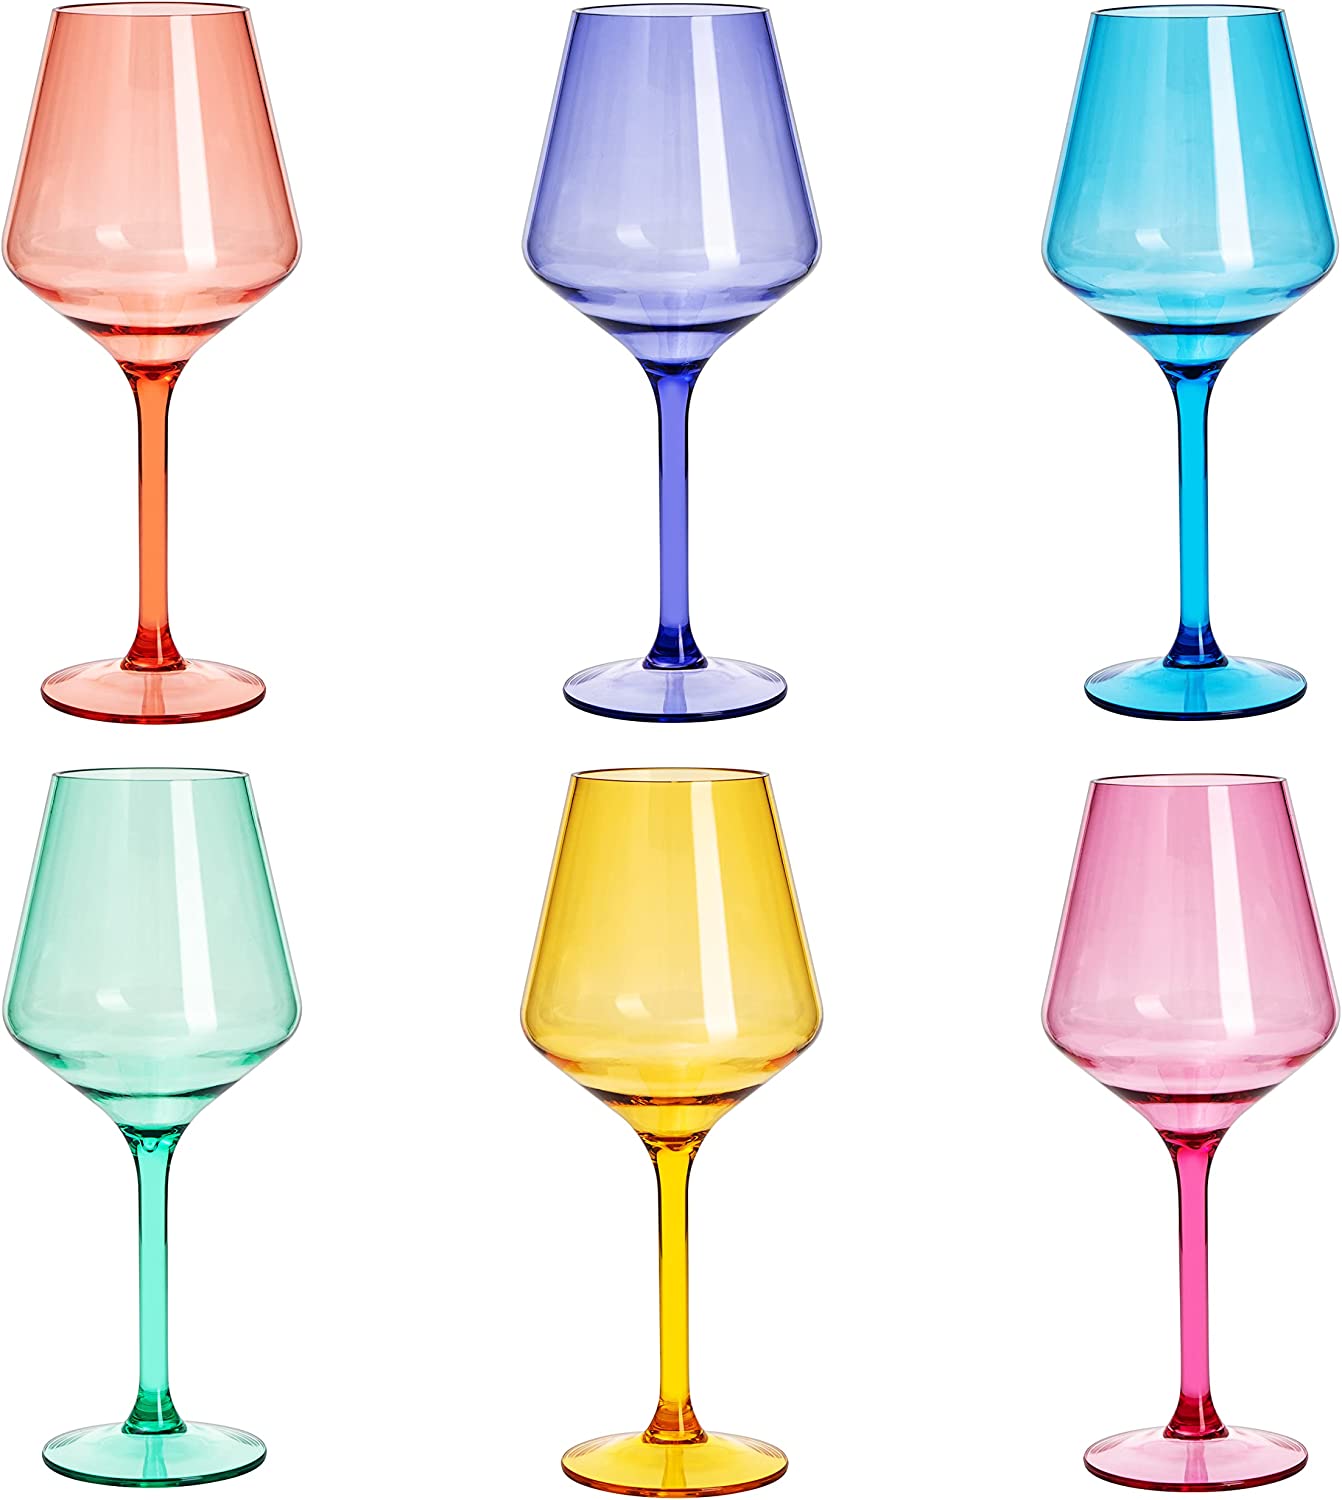 Madrid Wine Glassware, Unbreakable Acrylic, Set of 6